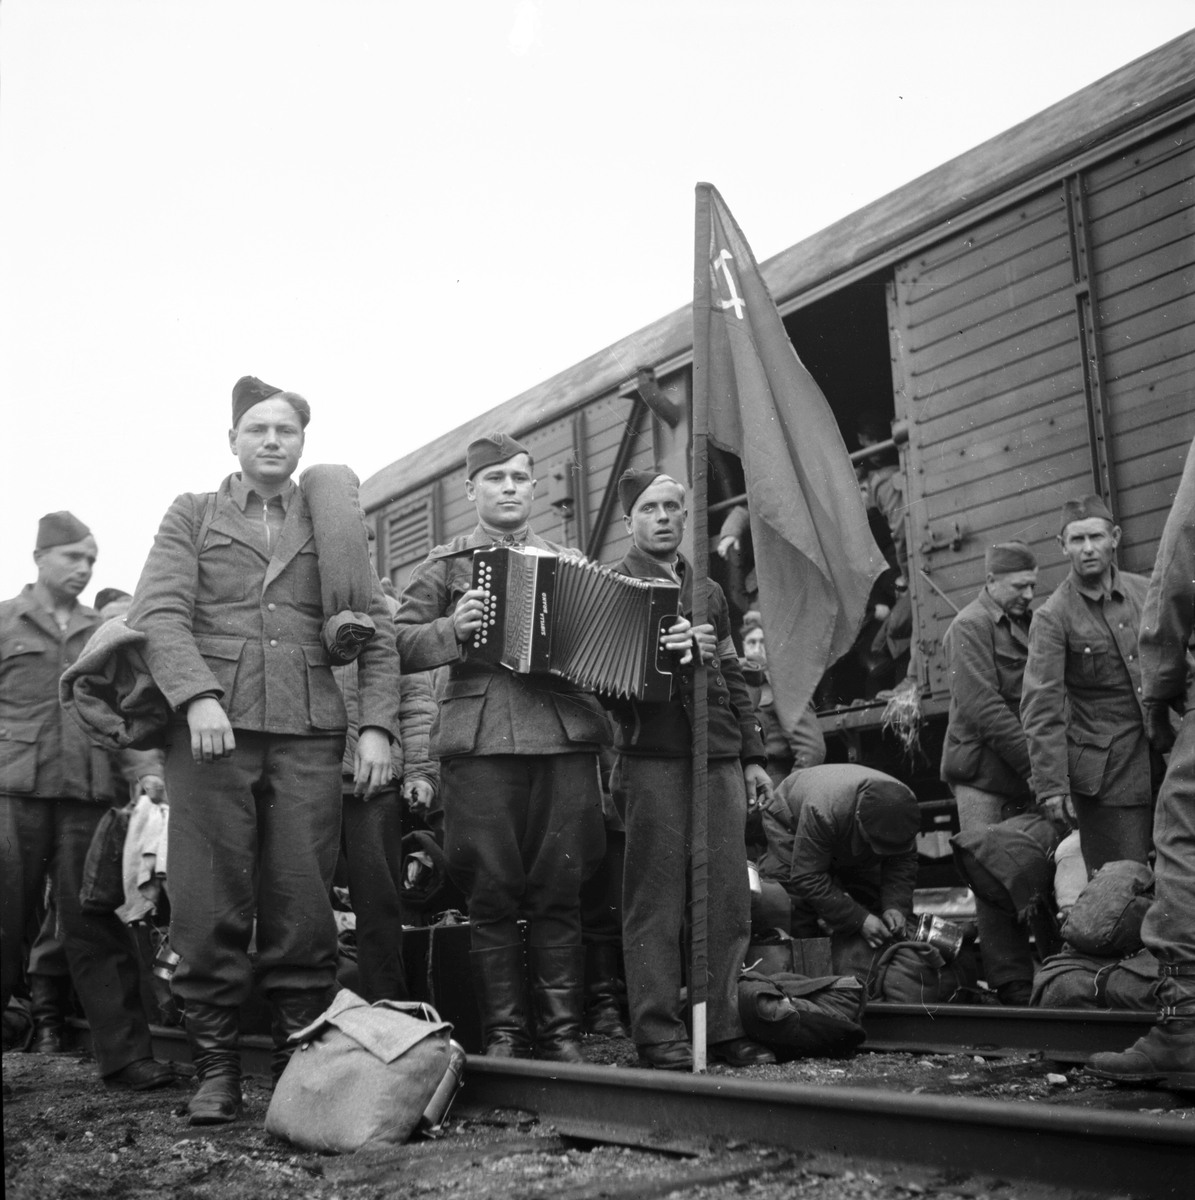 Rysstransport från Fredriksskans

14 Juni 1945